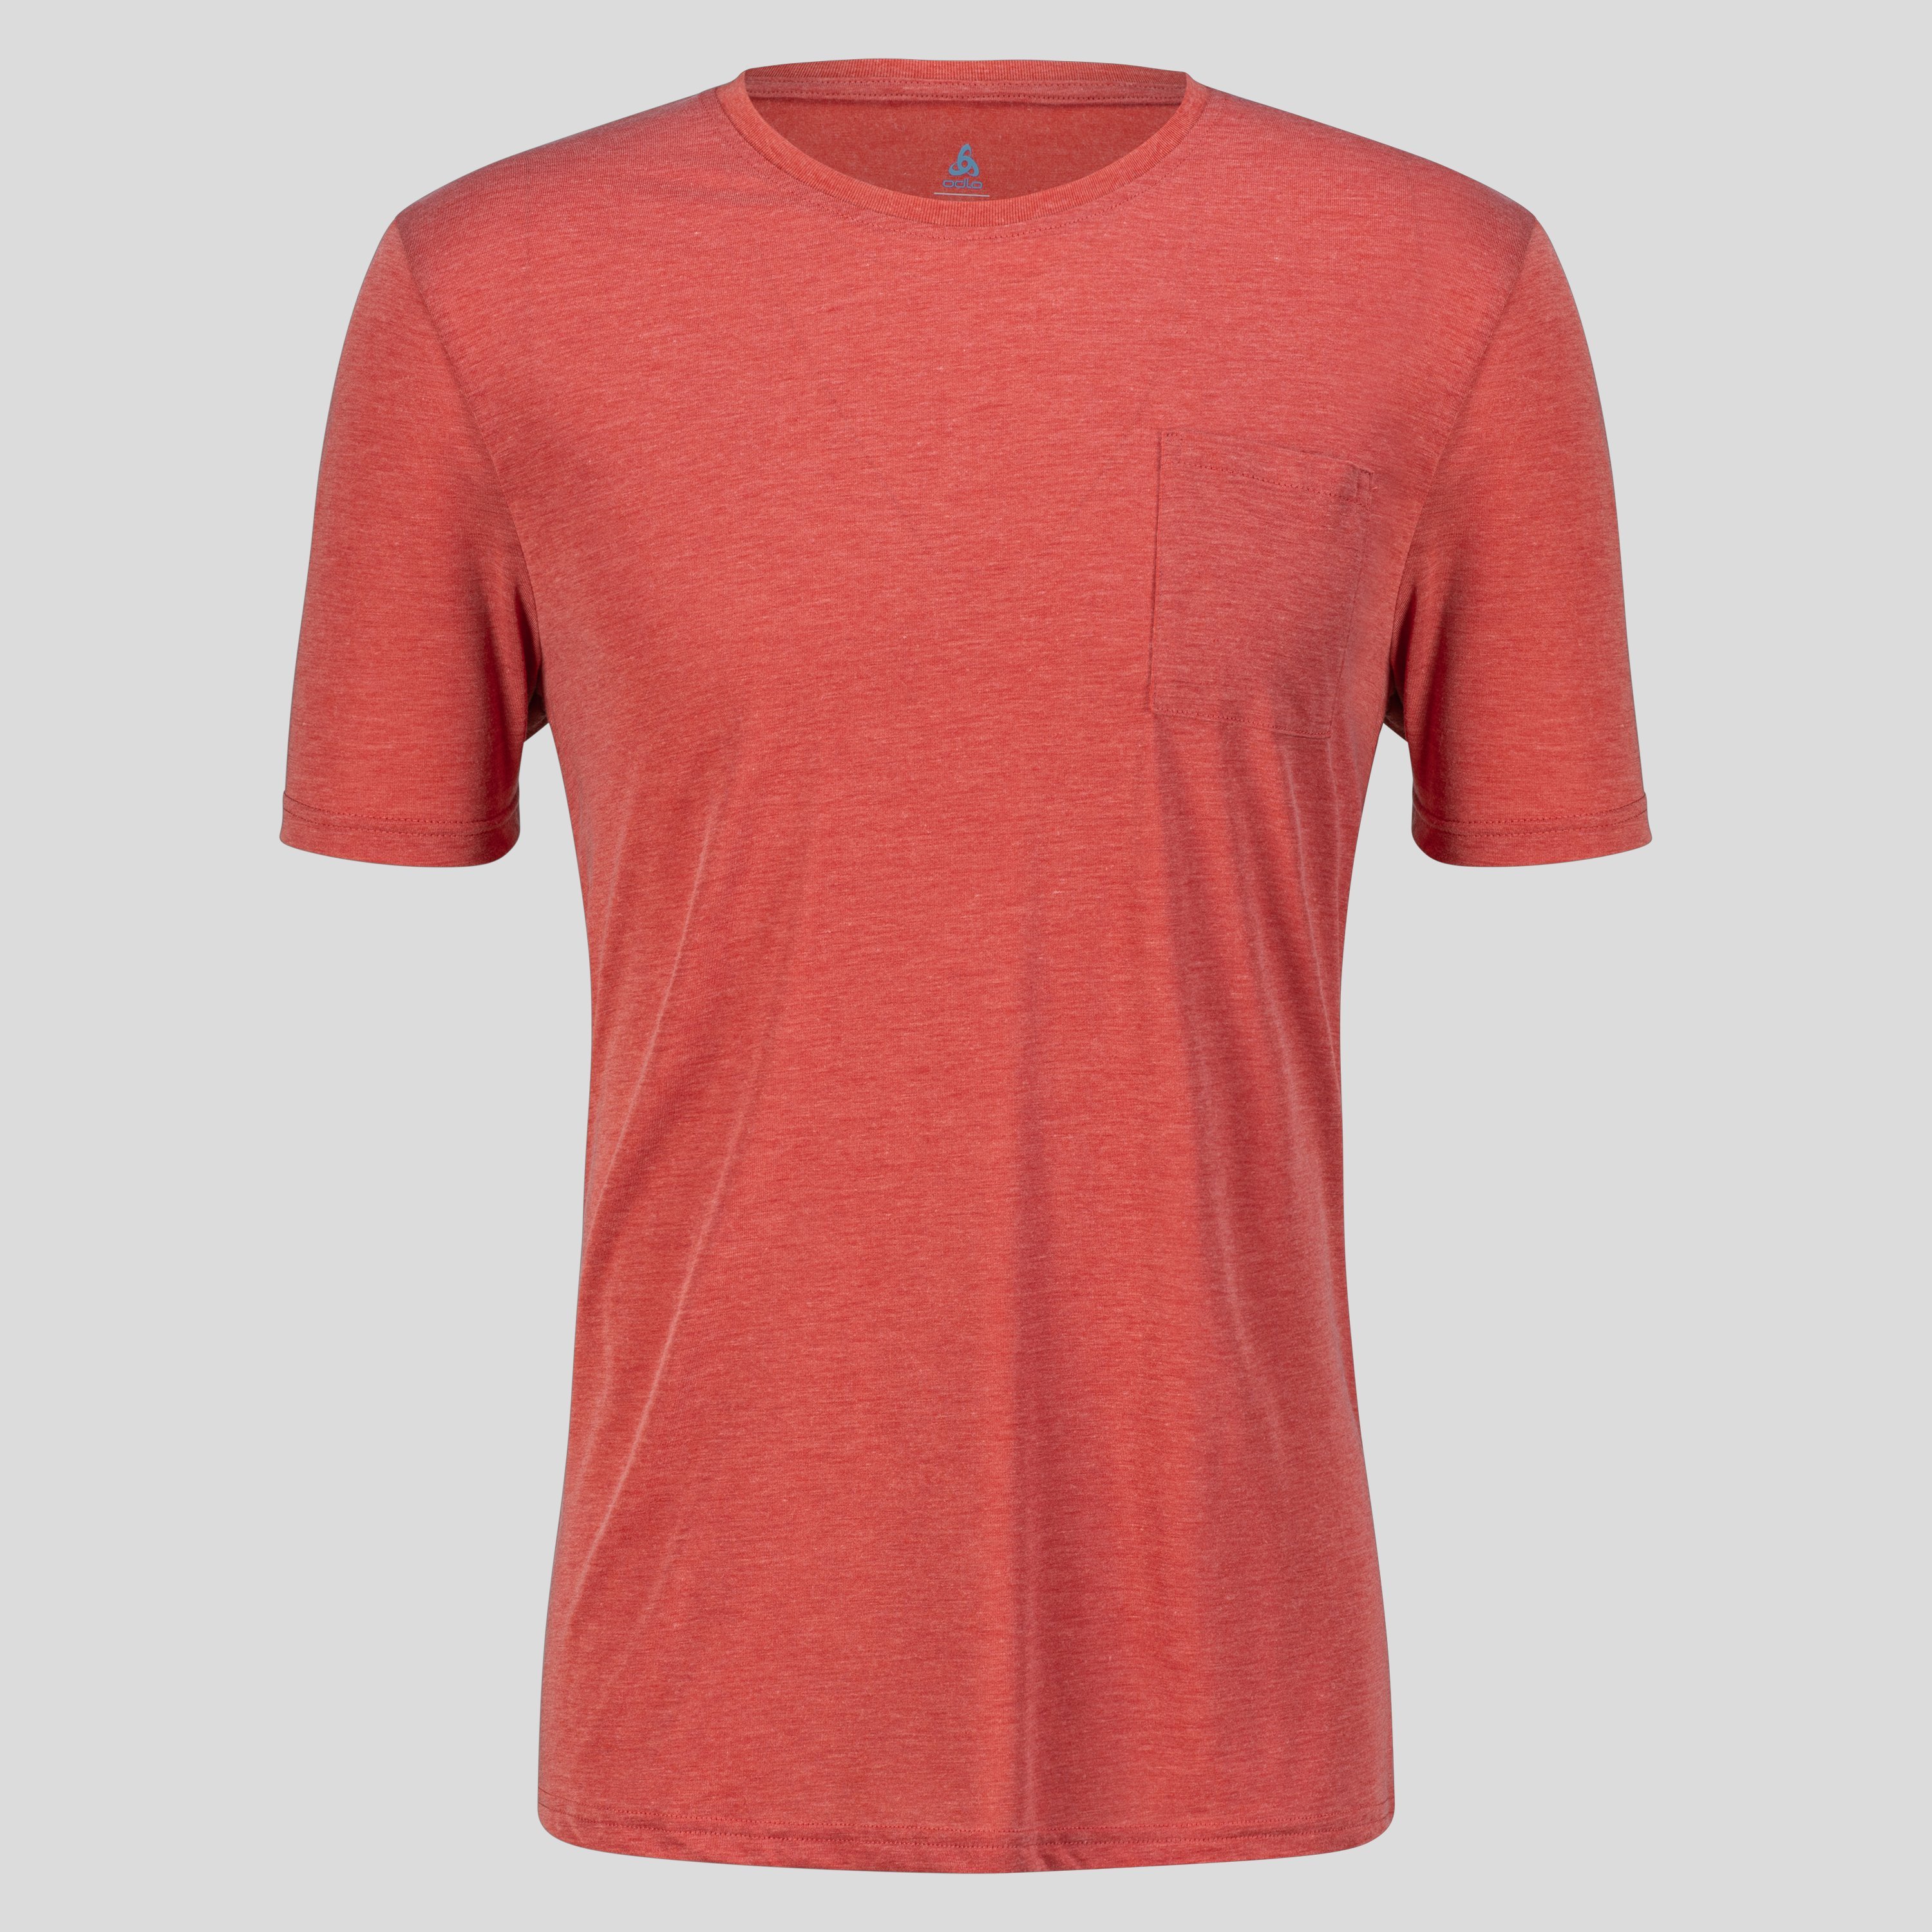 ODLO Ascent 365 T-Shirt mit Brusttasche für Herren, L, rot